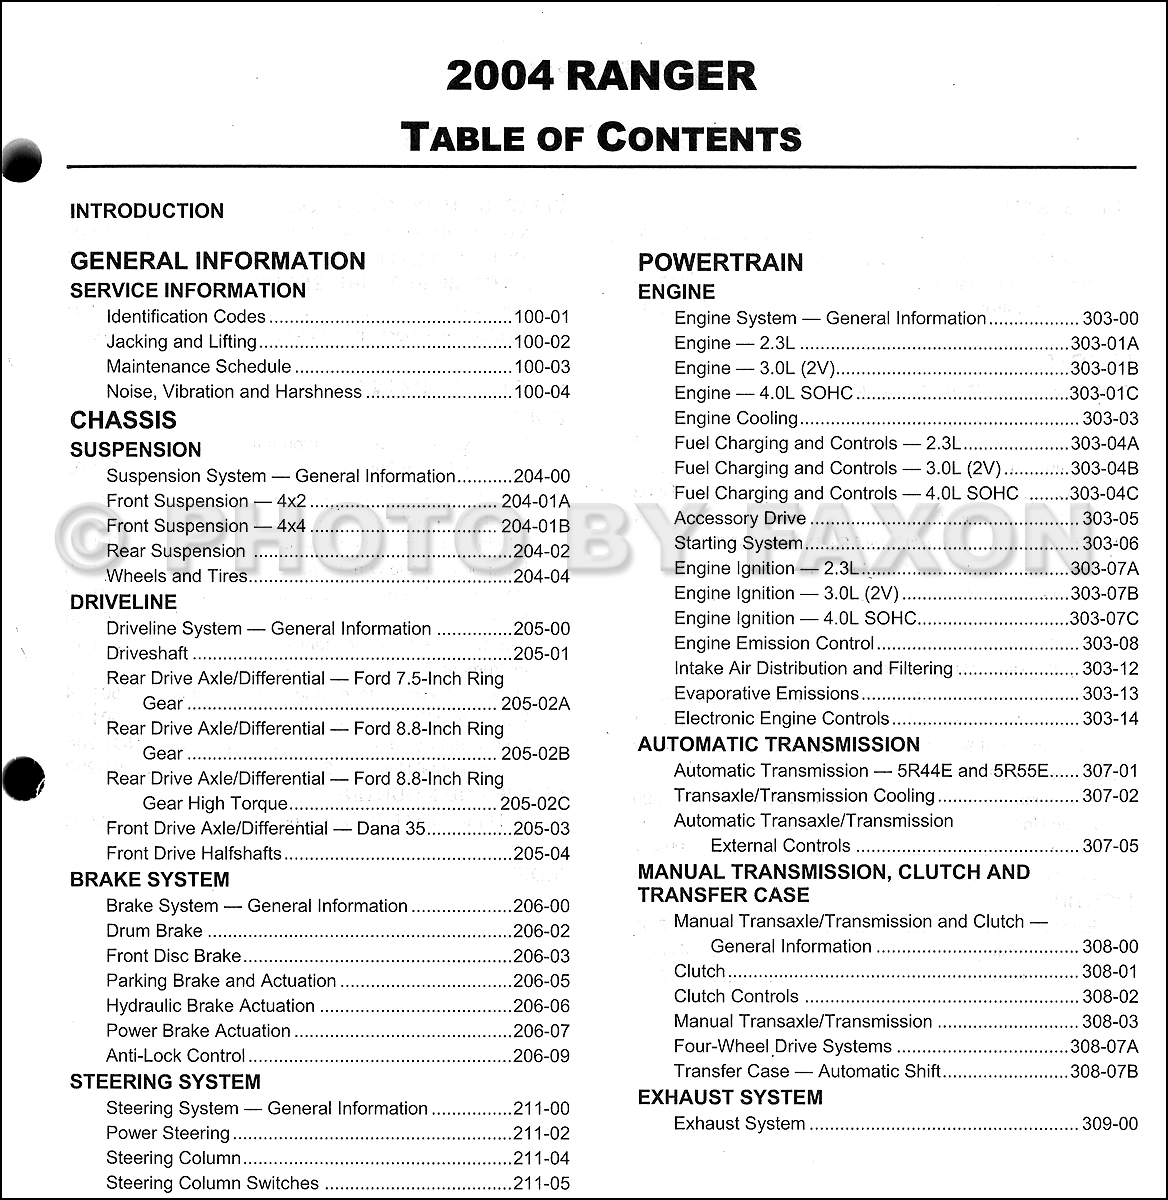 1994 ford ranger repair manual pdf free download